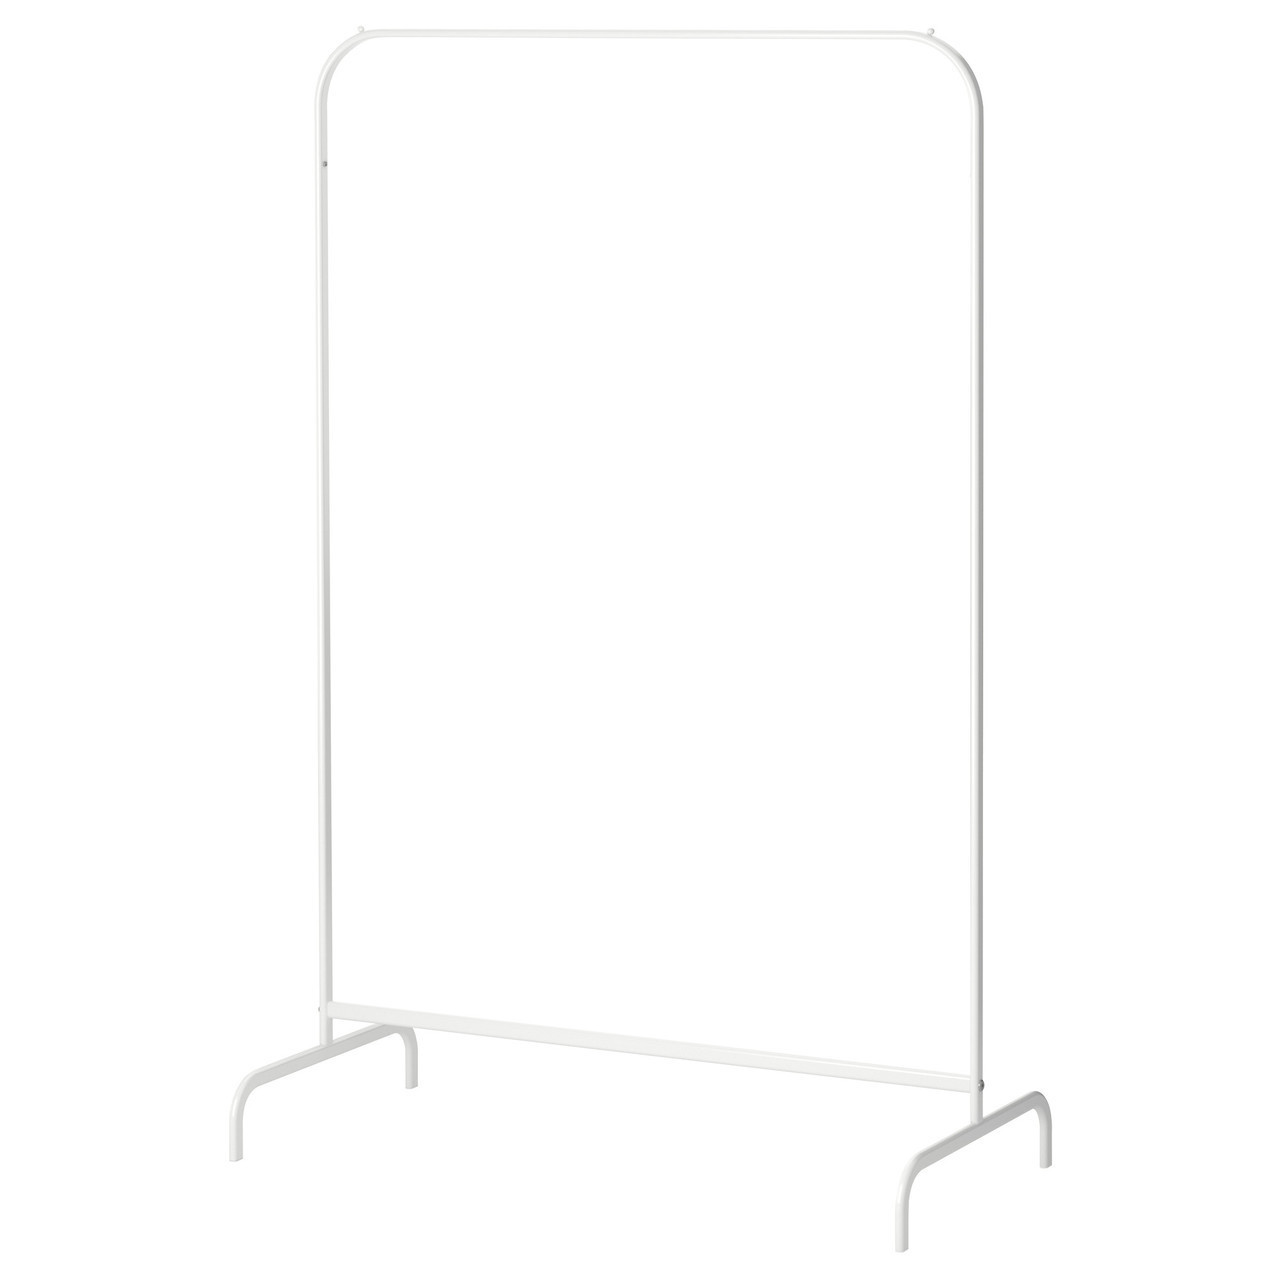 

Вешалка для одежди IKEA MULIG белая (601.794.34)